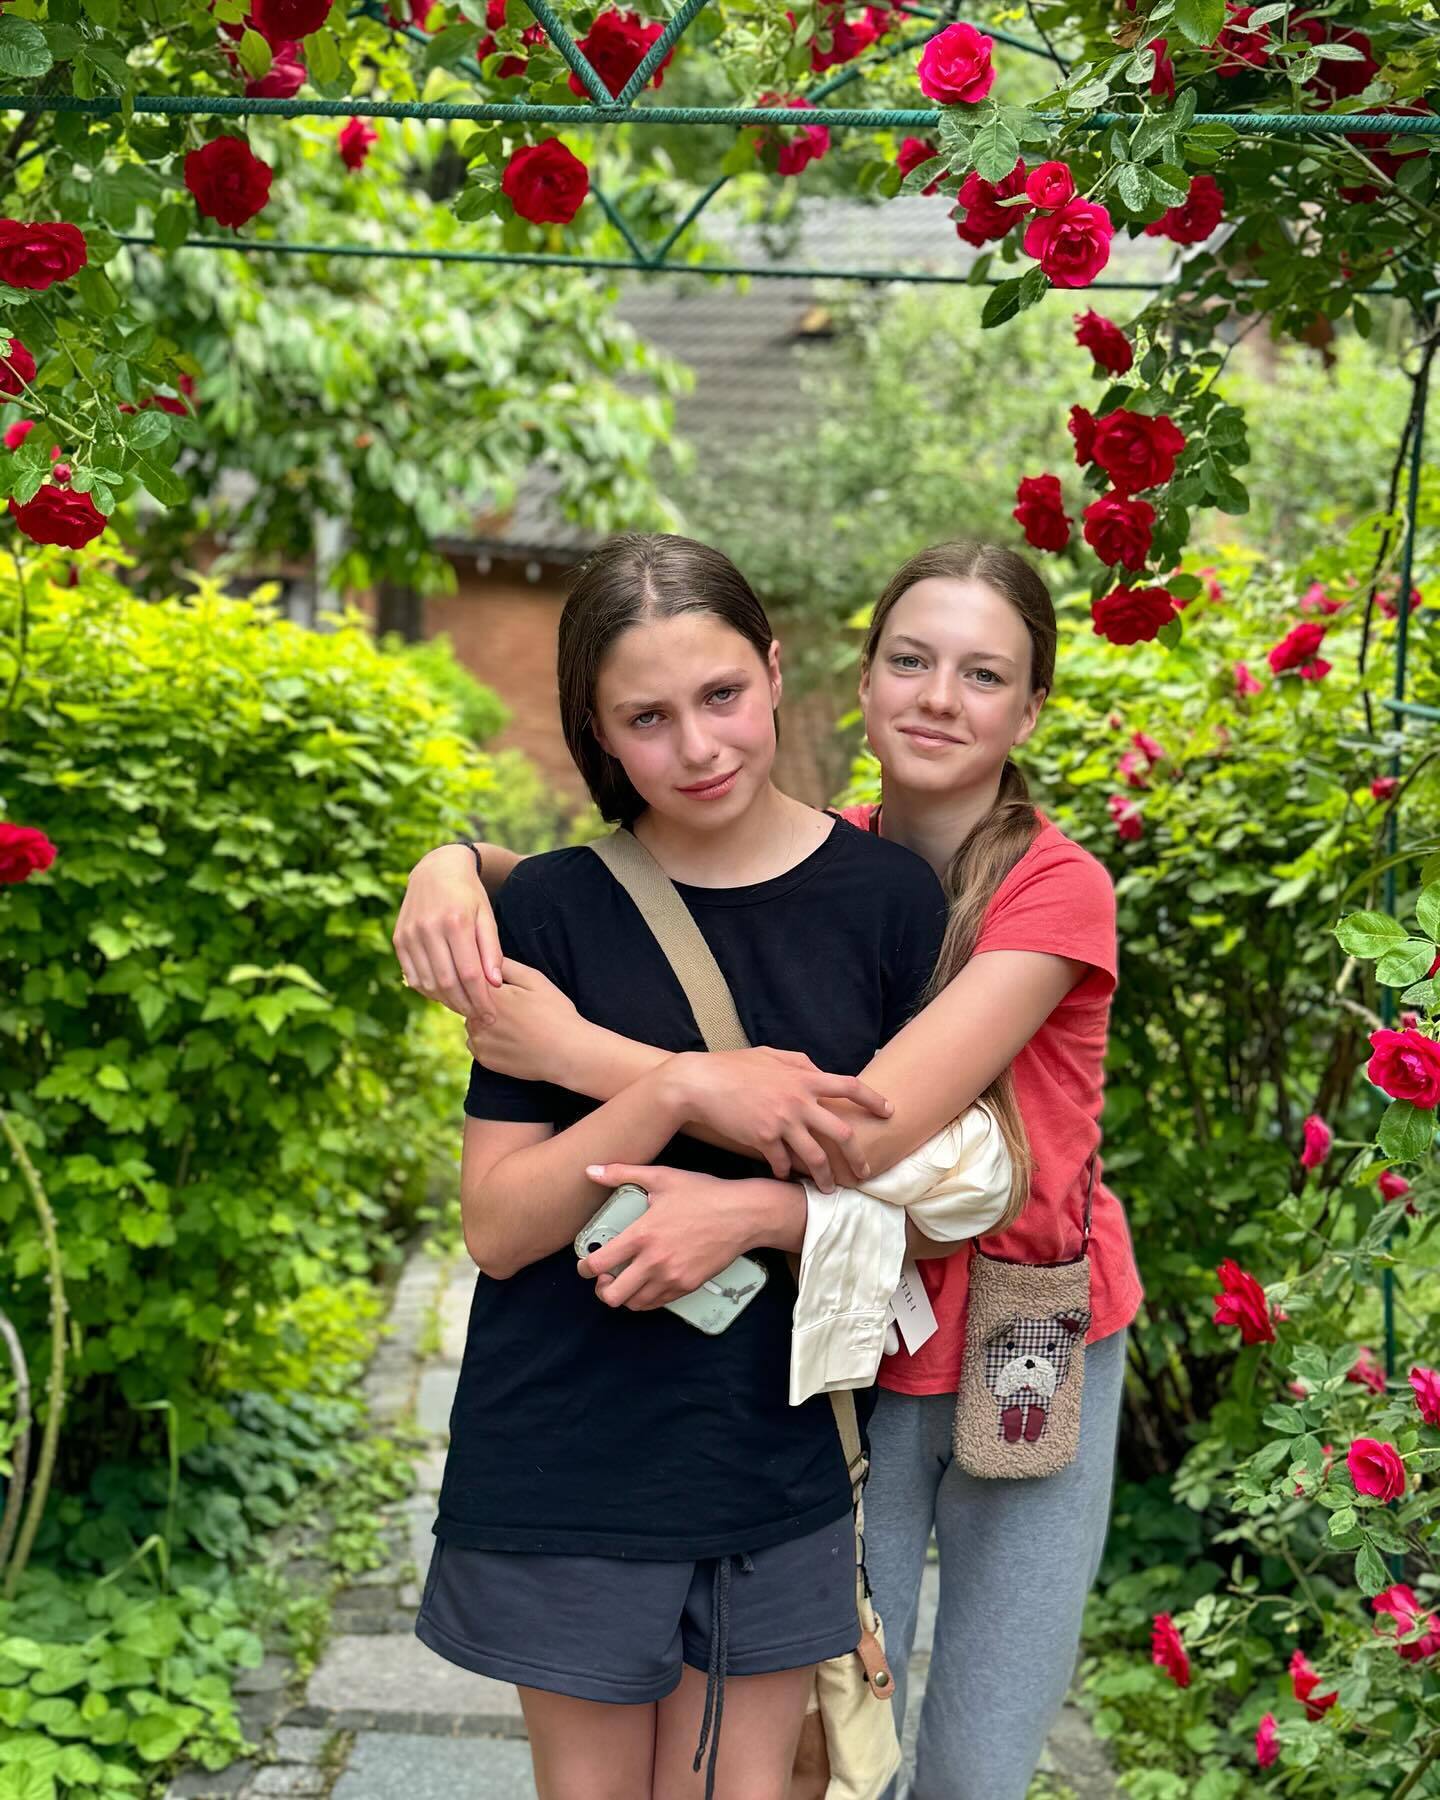 Оля Полякова объявила о возвращении младшей дочери Алисы в Украину: устала слышать истерики